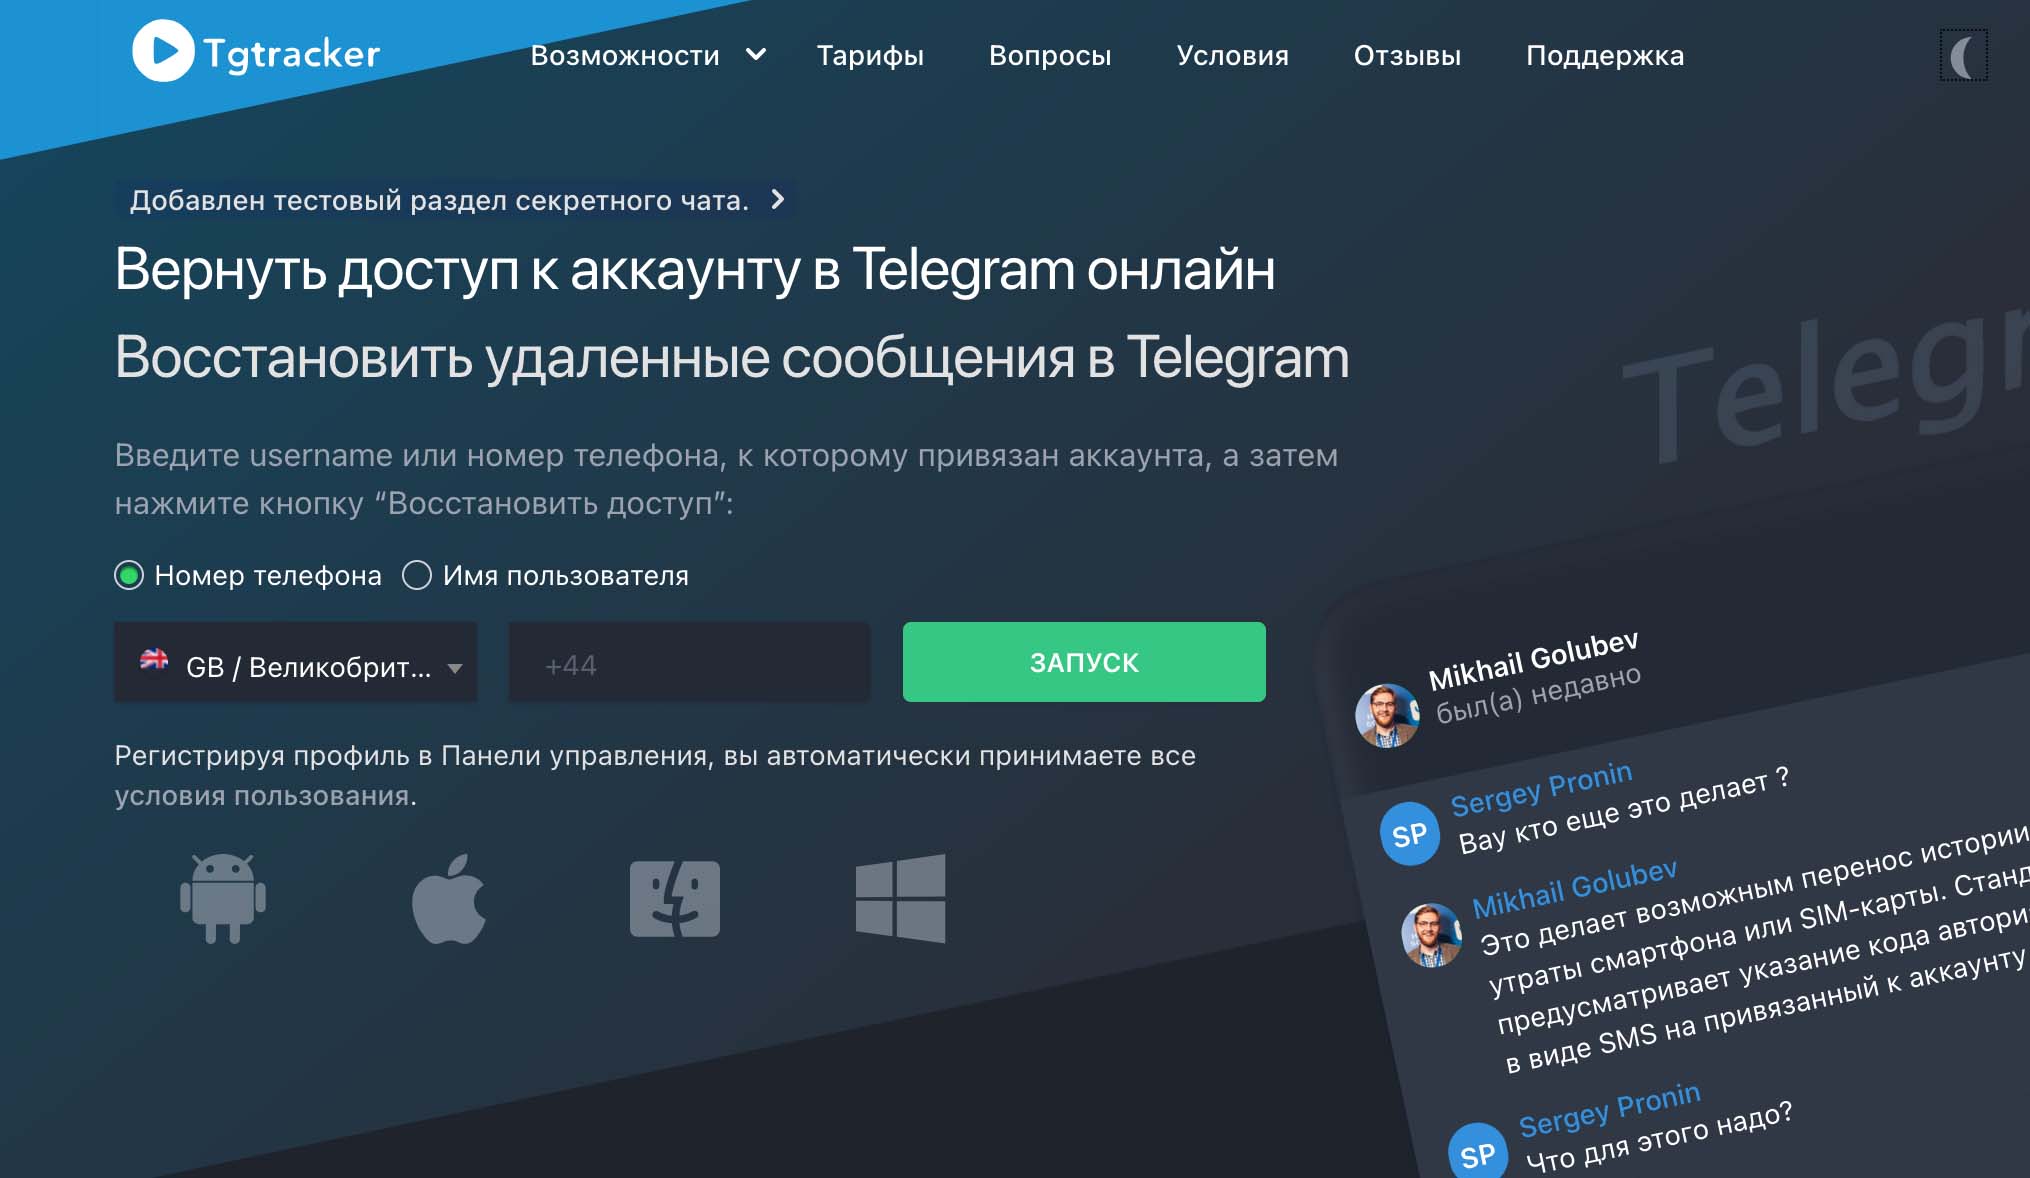 Comment utiliser Tgtracker pour suivre l'activité d'un utilisateur sur Telegram ?